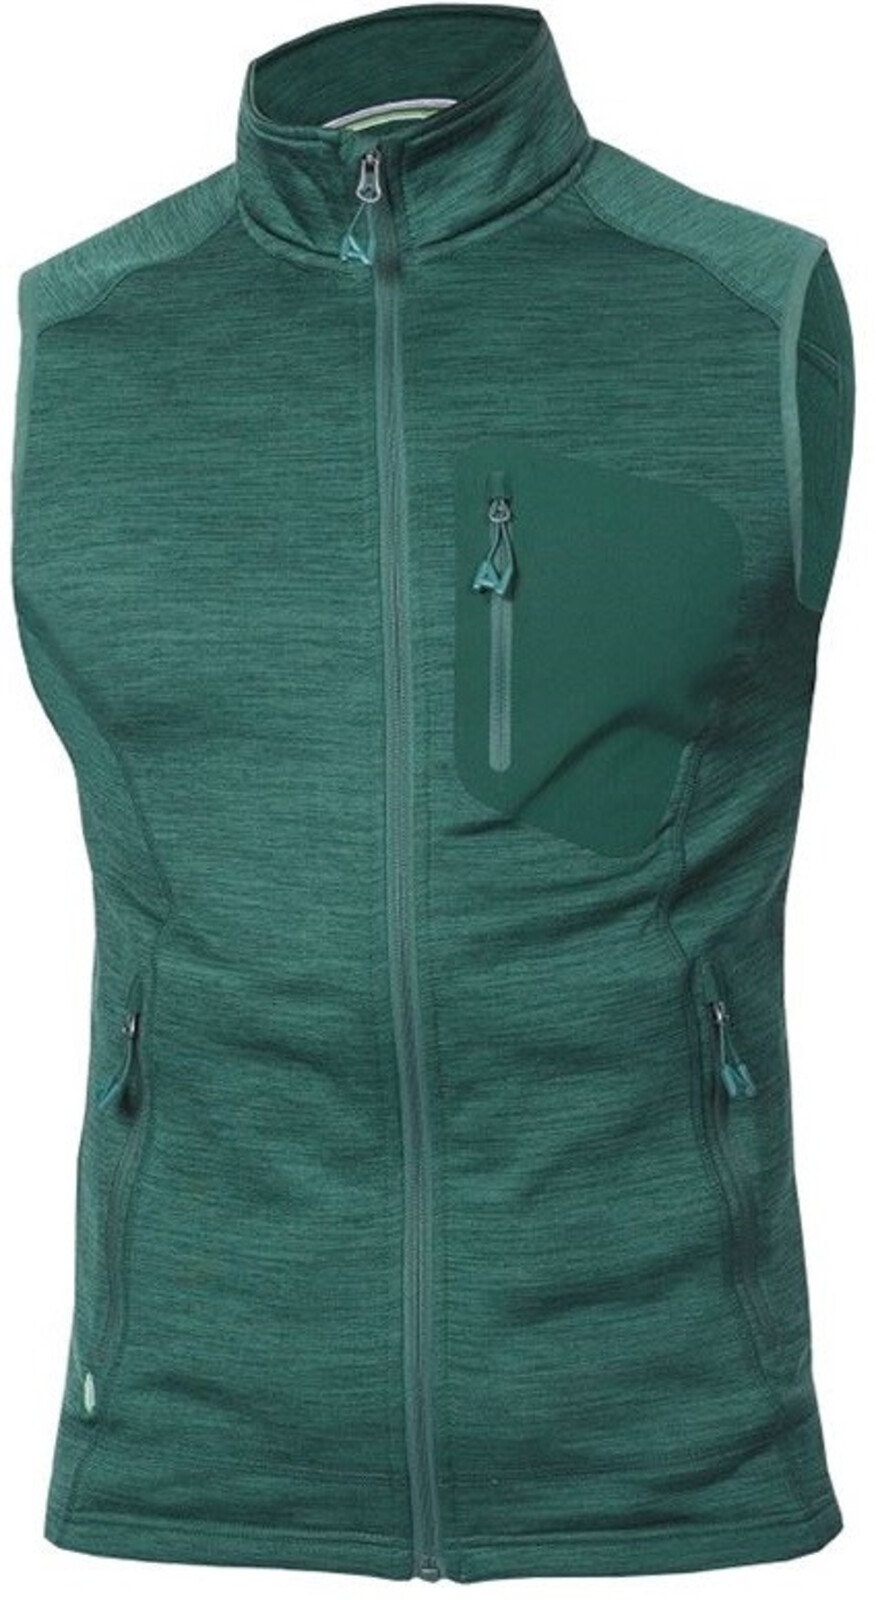 Pánska funkčná vesta Ardon Breeffidry - veľkosť: 3XL, farba: zelená